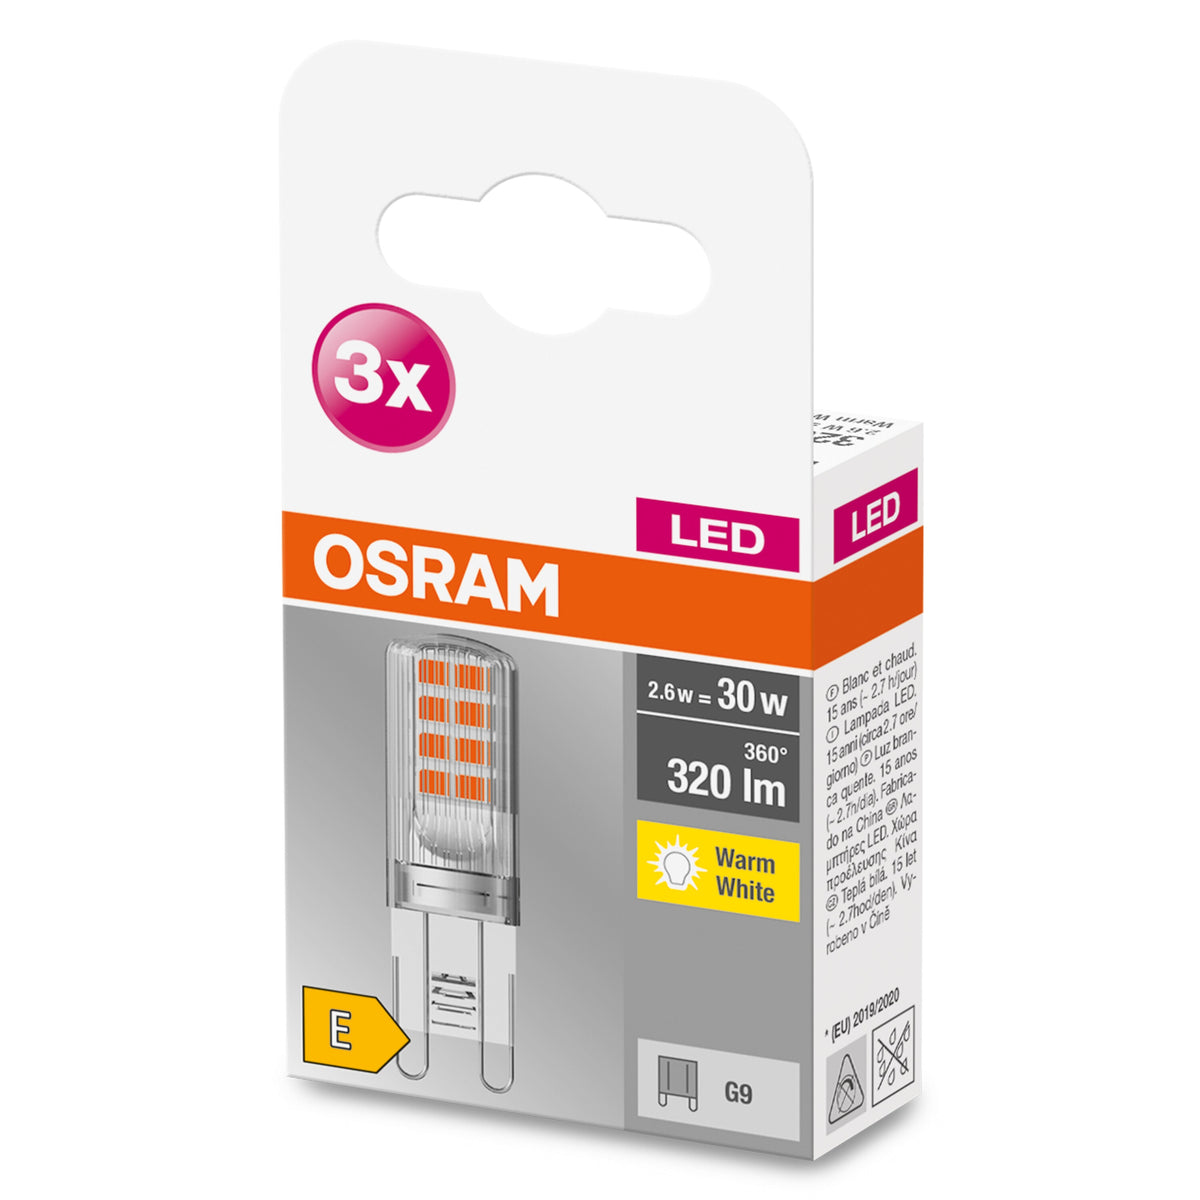 OSRAM LED Base ampoule à culot à LED (ex 30W) 2,6W / 2700K blanc chaud PIN G9 paquet de 3